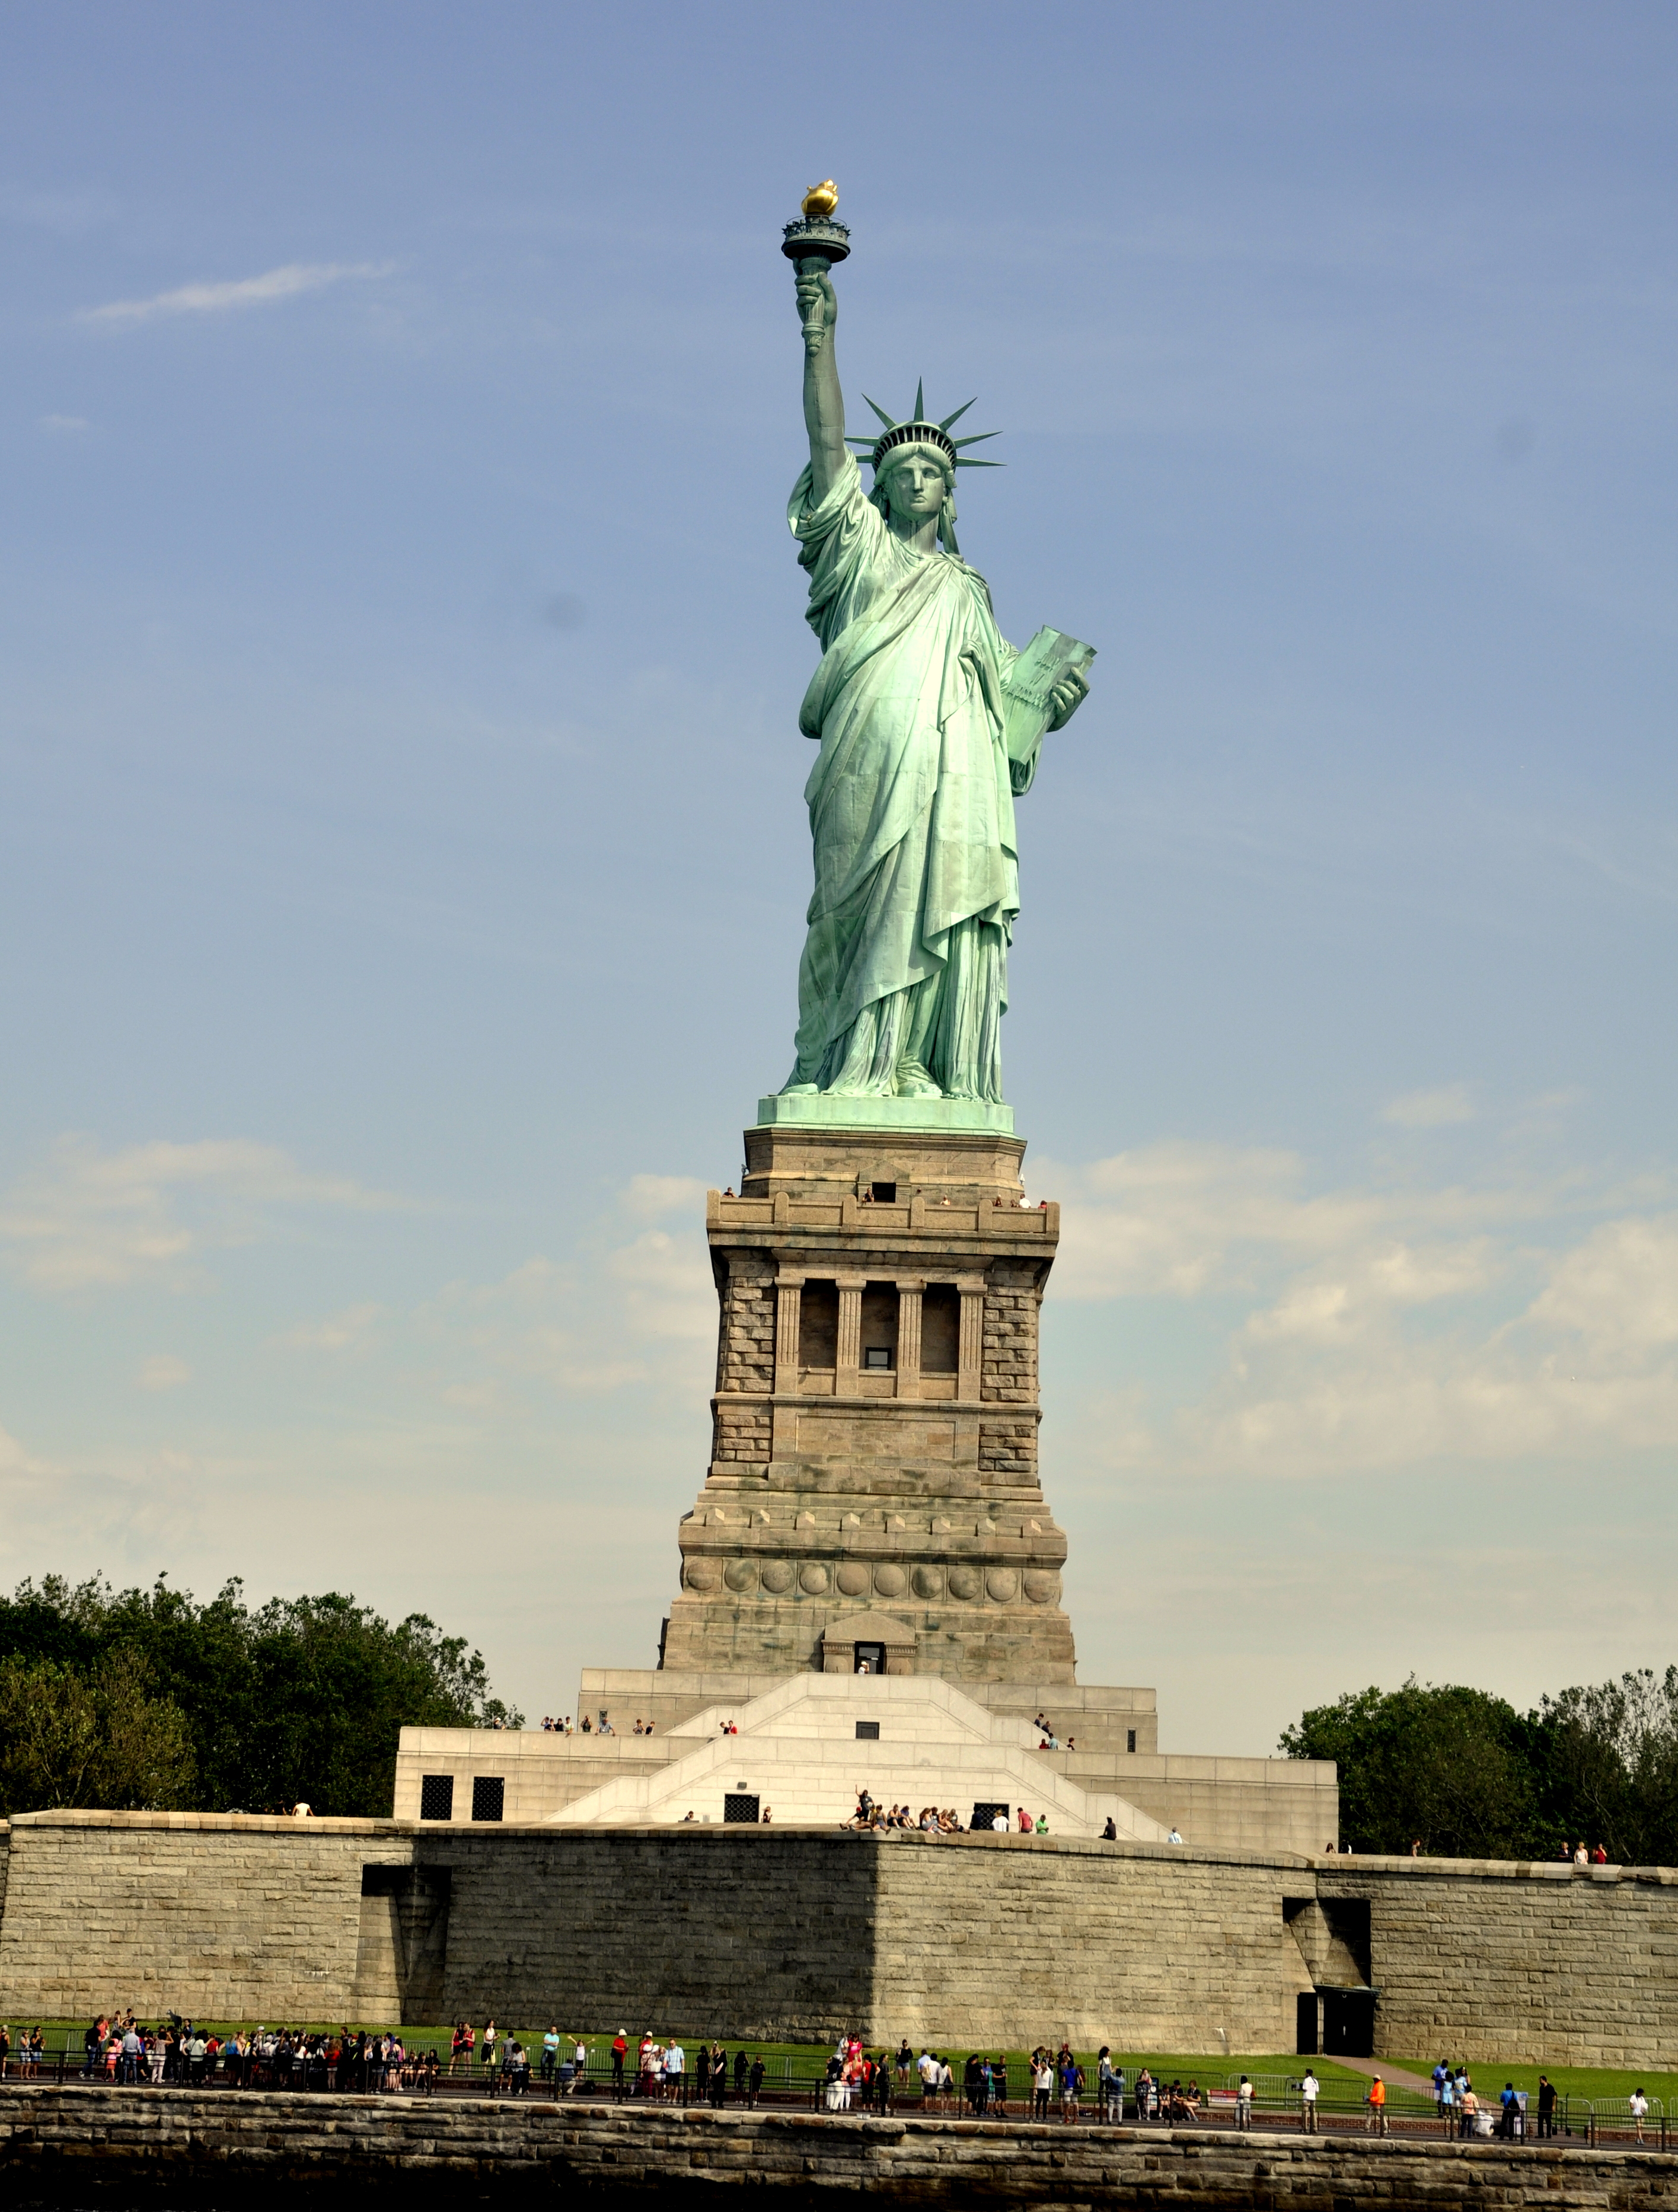 【携程攻略】纽约自由女神像适合情侣出游旅游吗,自由